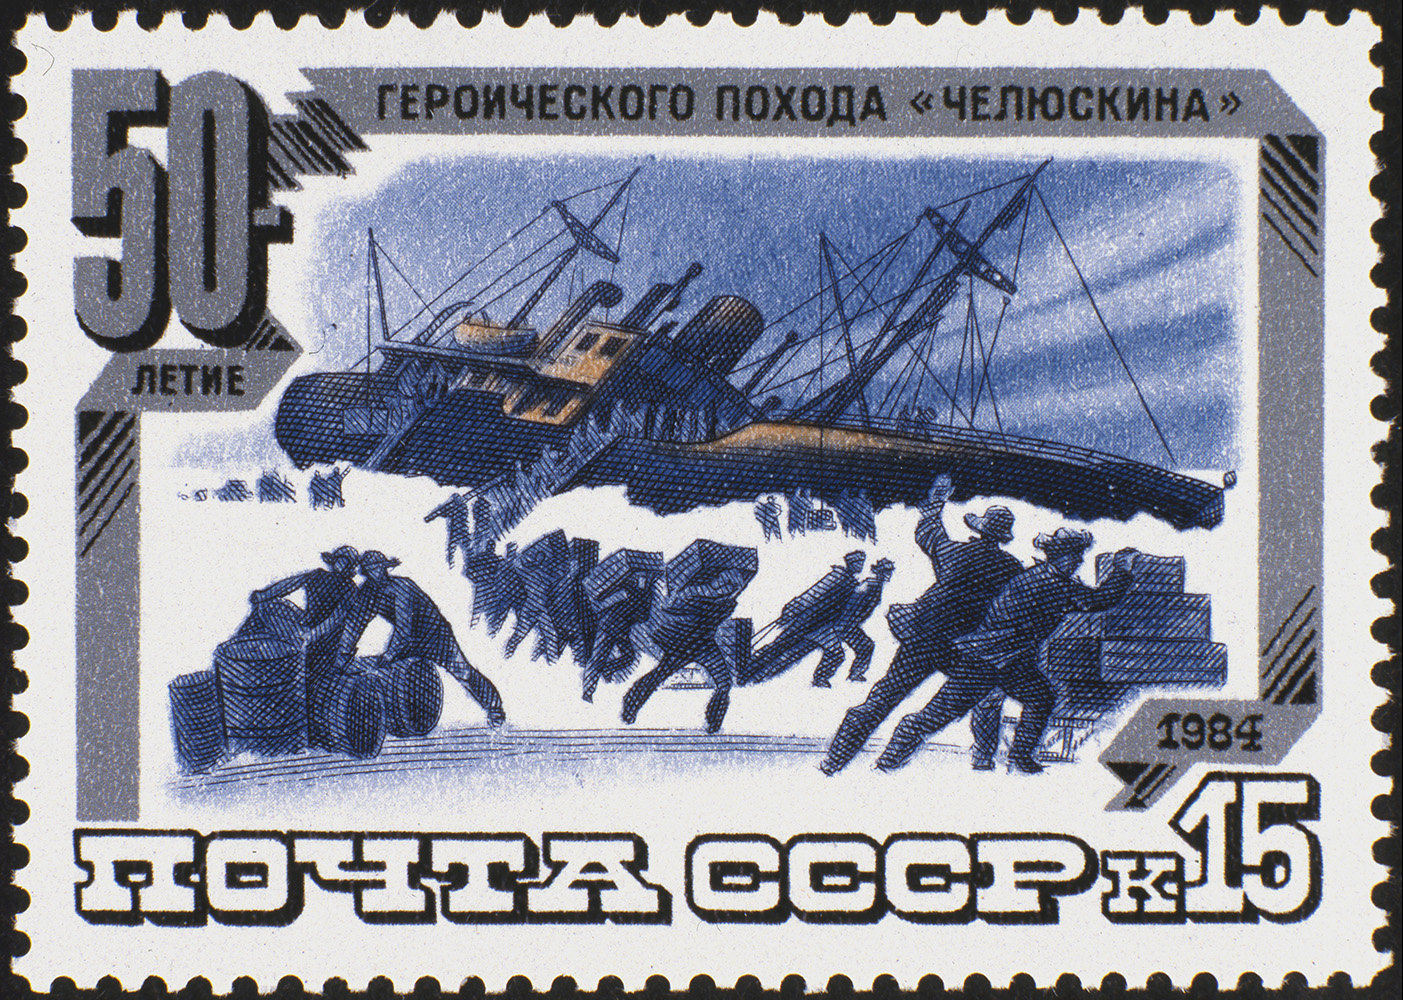 Почтовая марка «50-летие героического похода «Челюскина». 1984 год. Репродукция